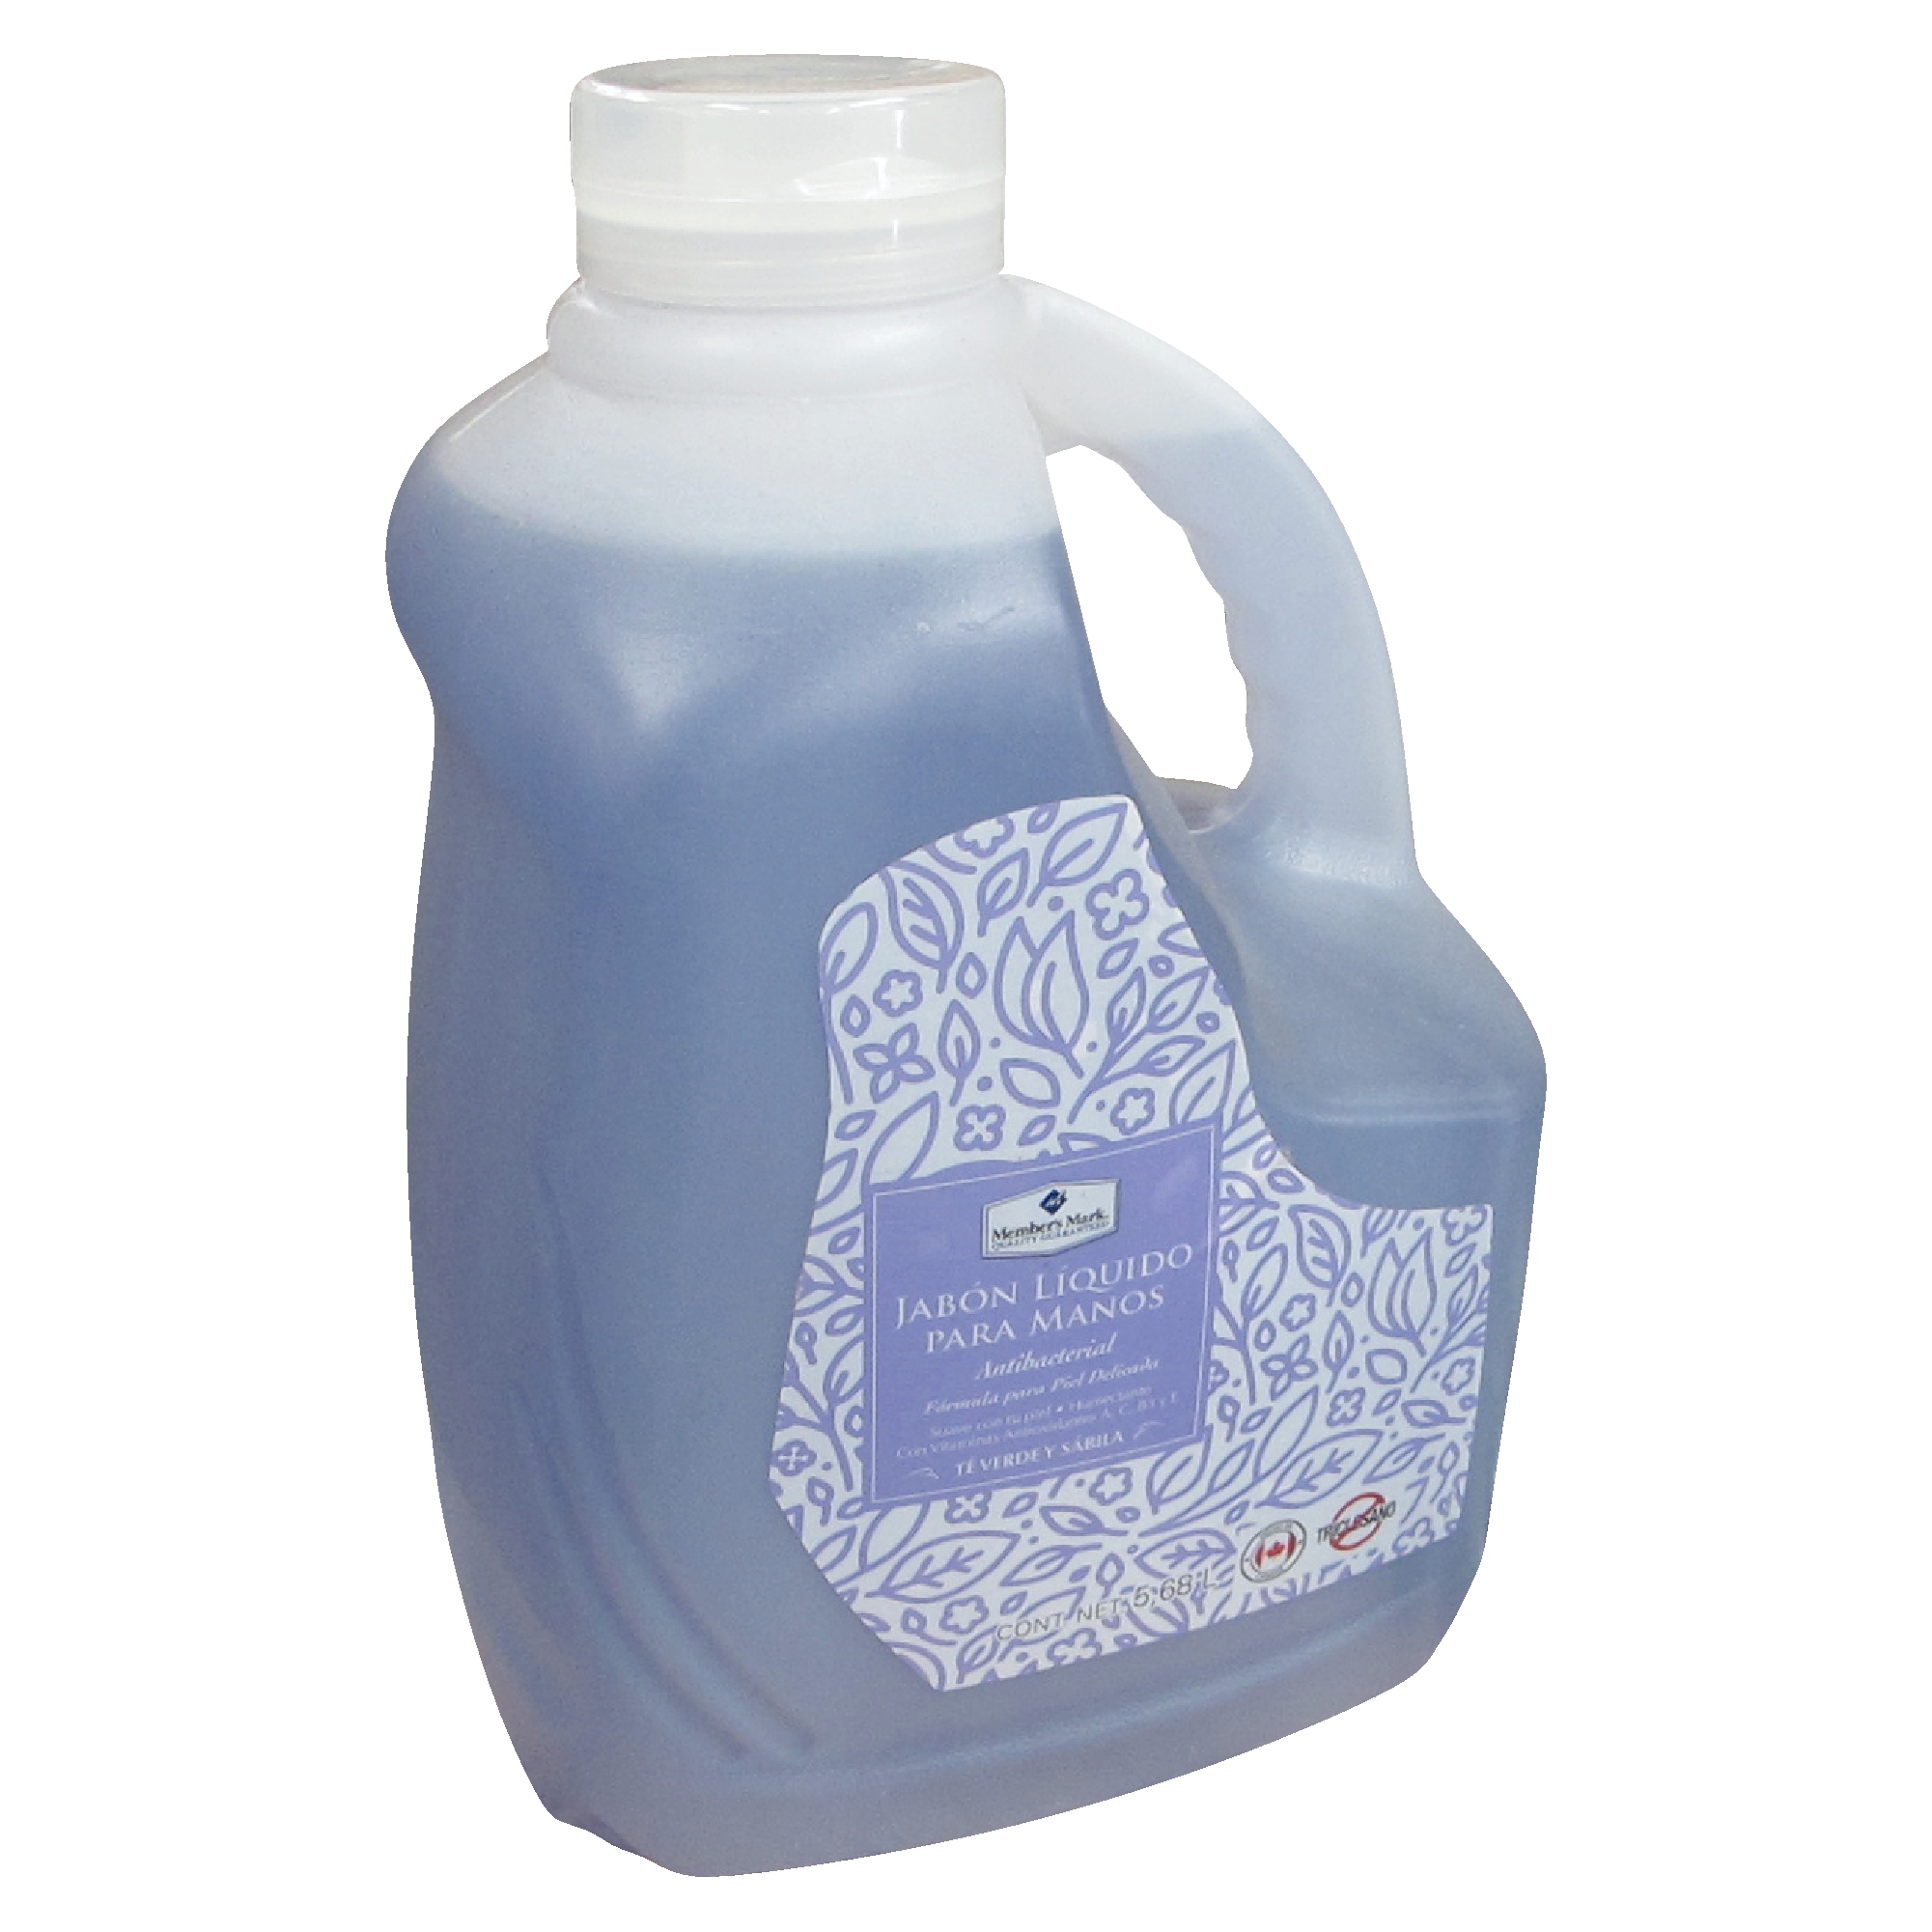 Jabón para manos, Member's con 5.6 litros | S.G. Proveedores - Productos de Limpieza y